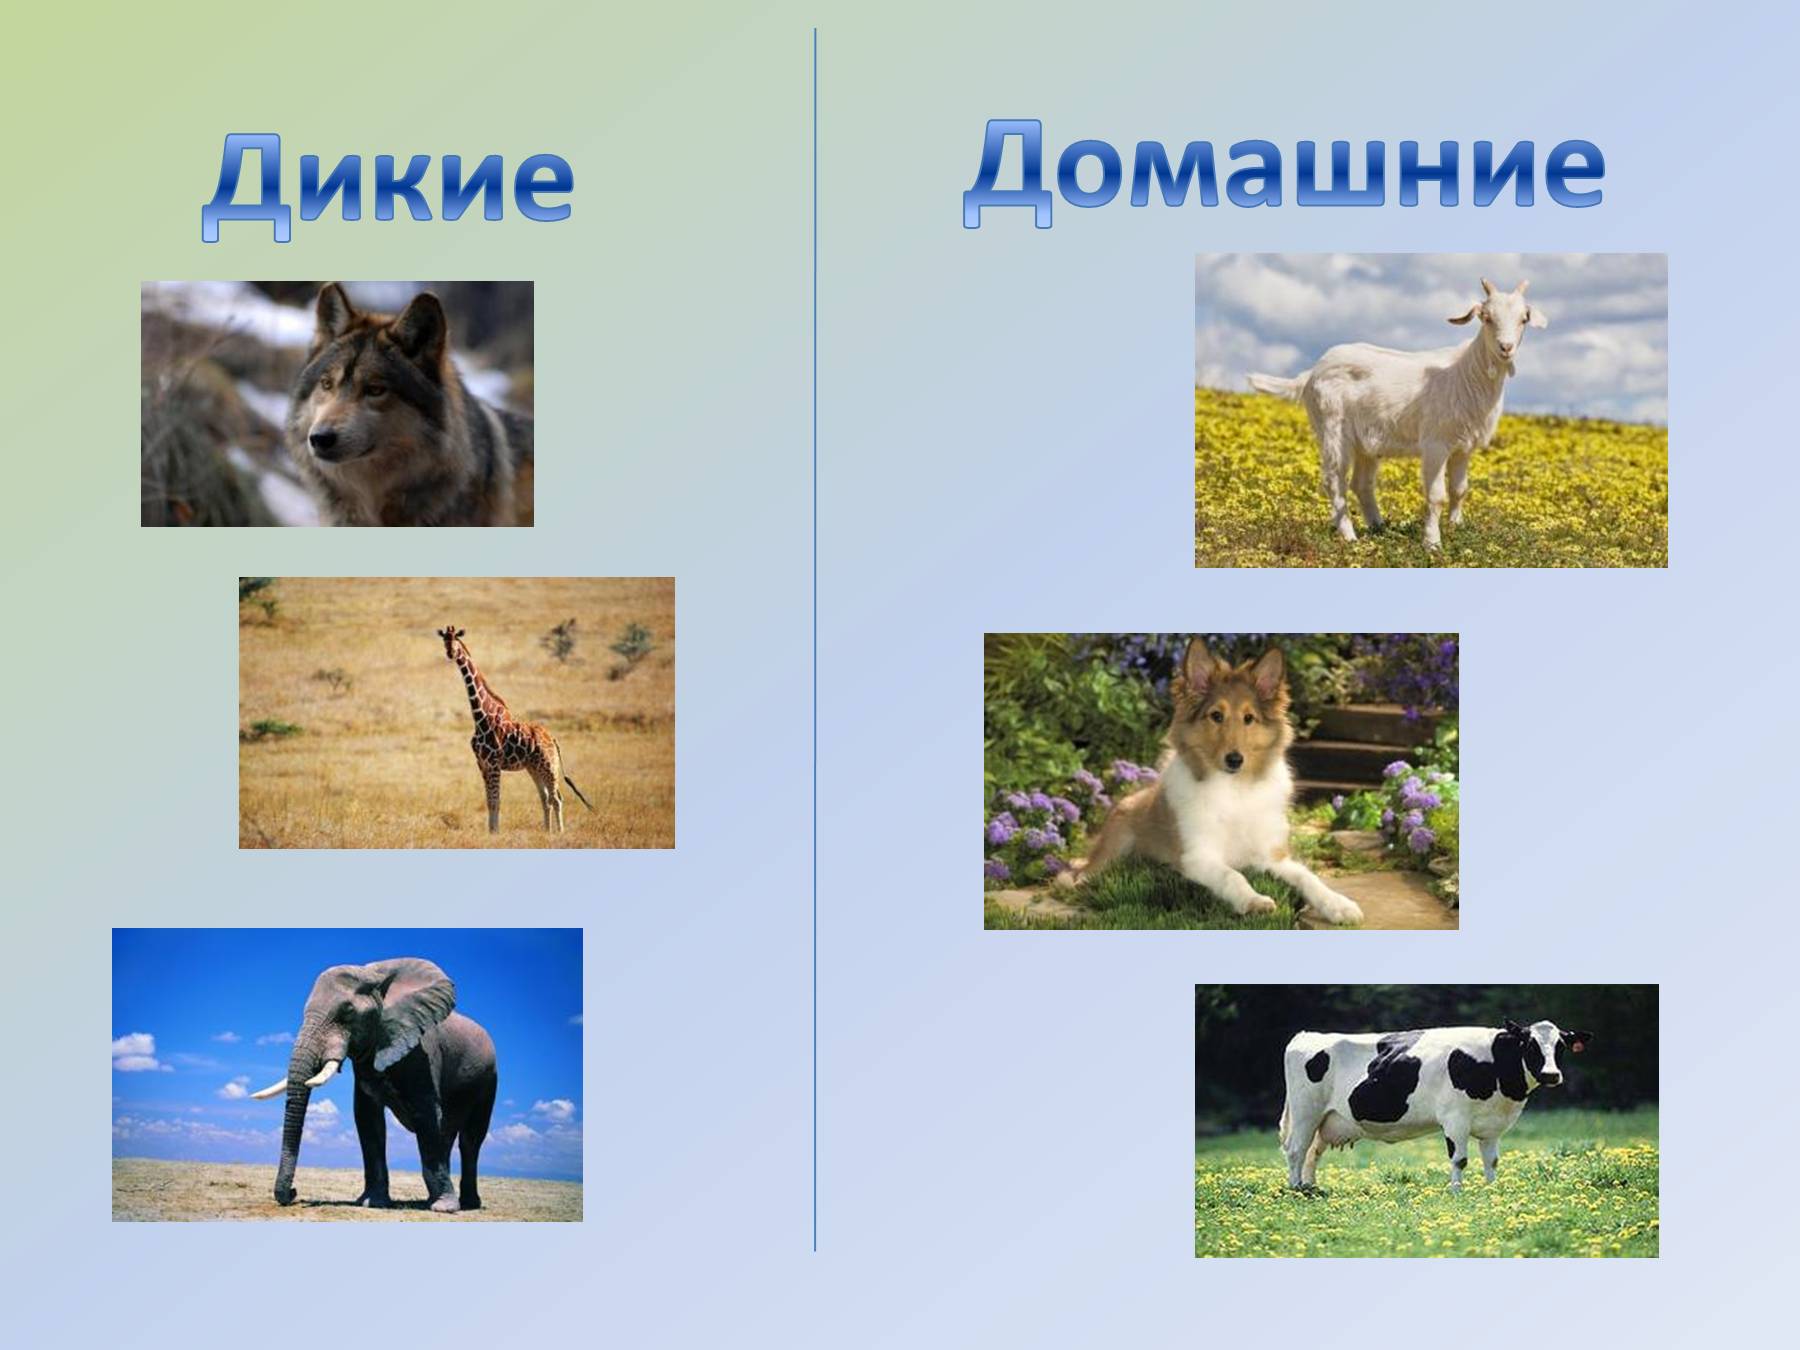 Животные 3 категории